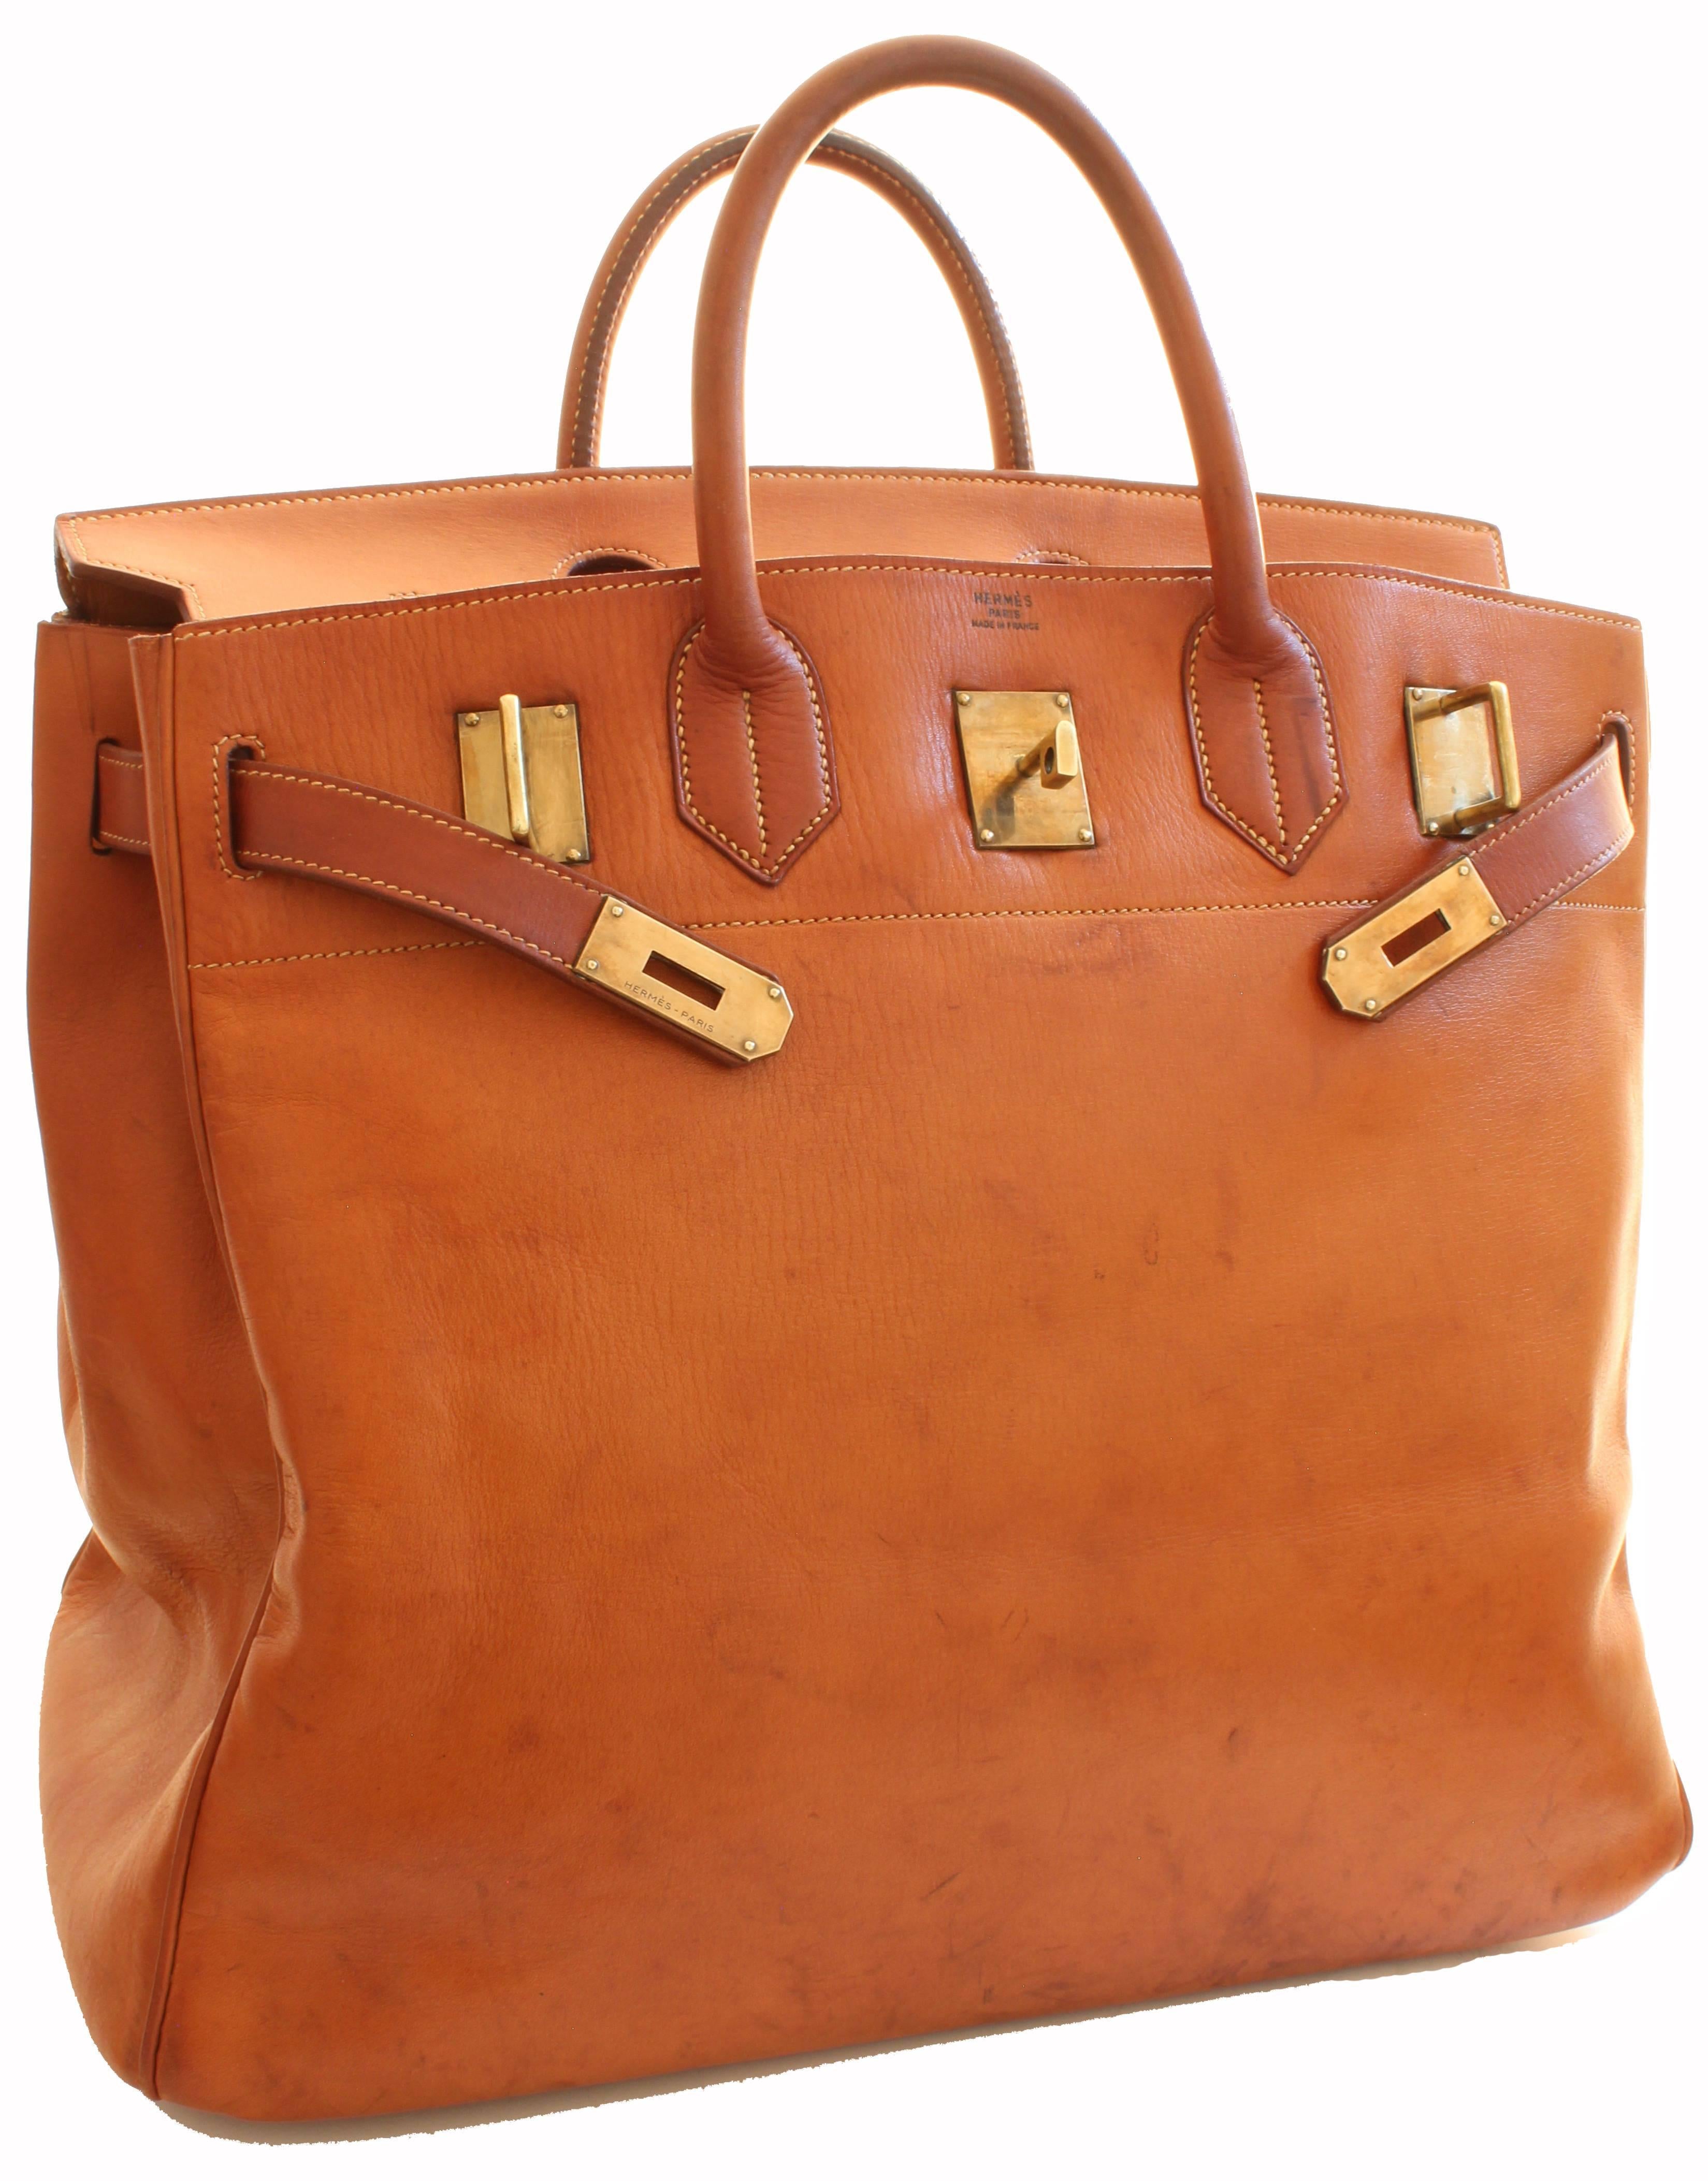 Hermes Haut a Courroies Bag HAC 45cm Travel Tote Rare Veau Grain Long Leather  1